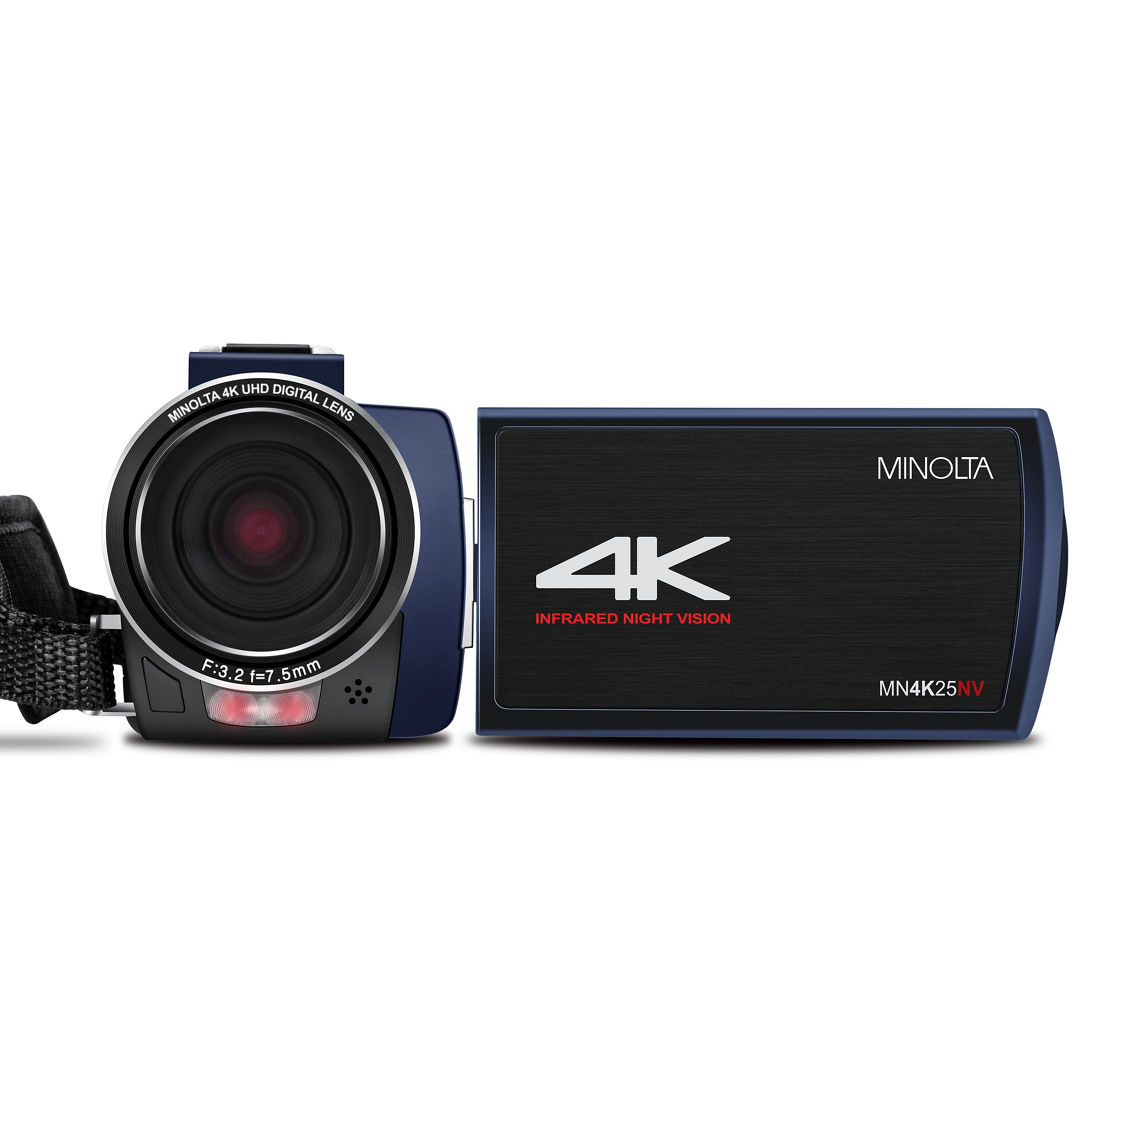 Minolta MN4K25NV 4K Ultra HD / 30MP IR Night Vision Camcorder - Image 2 of 5